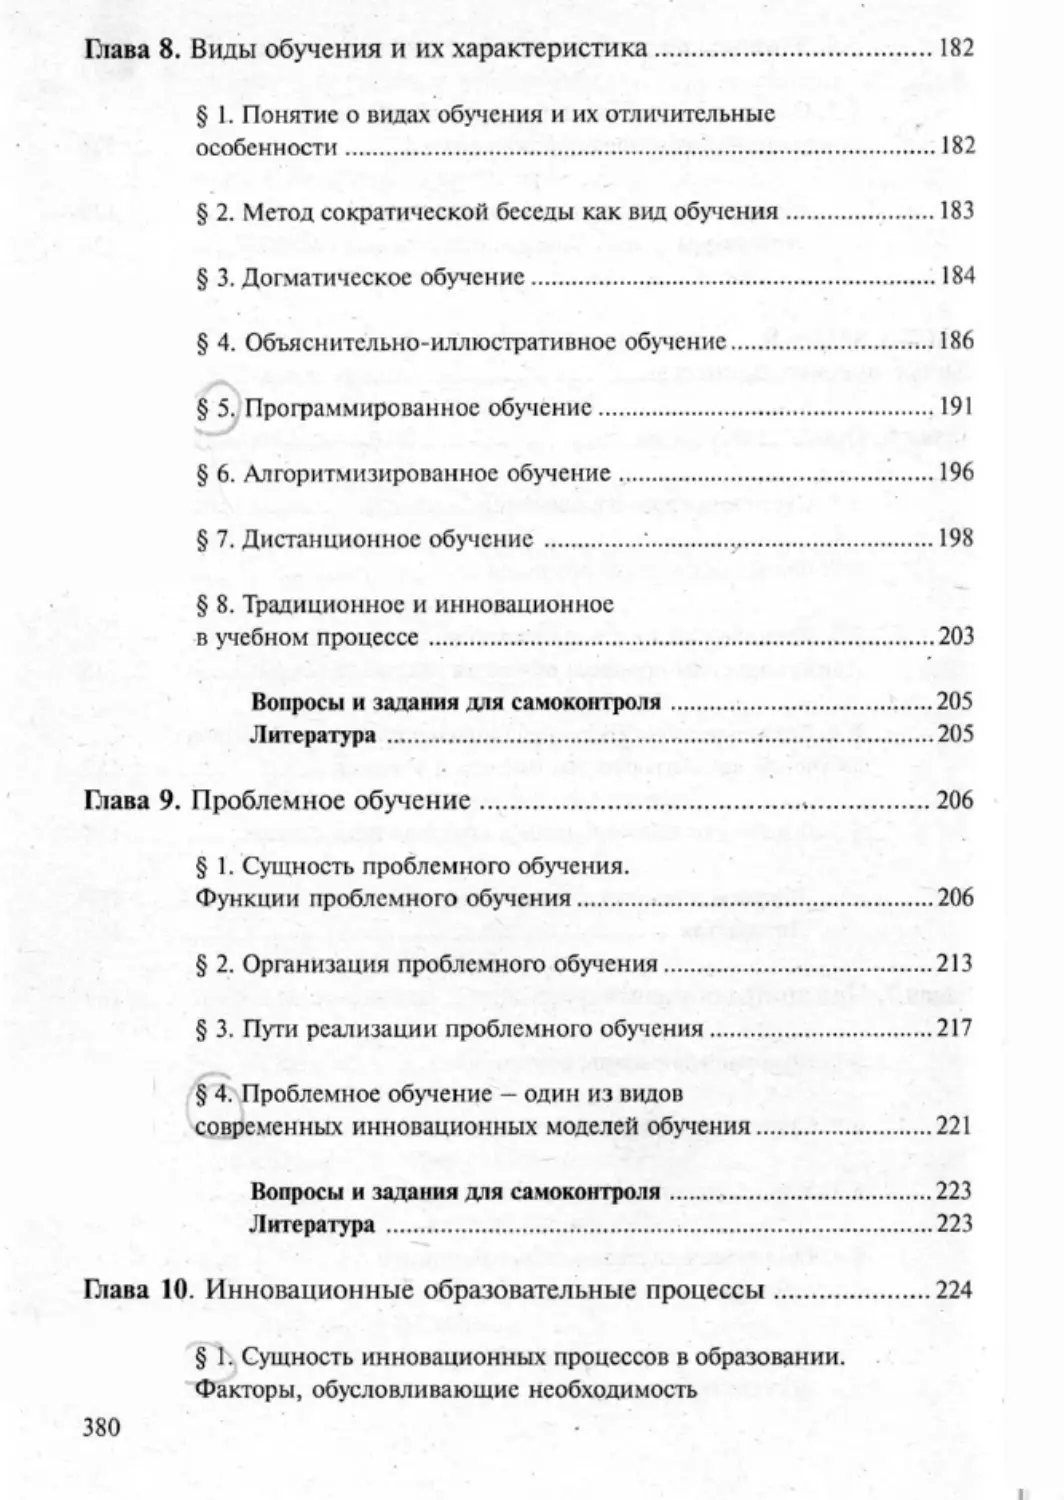 Загрекова Л.В., Николаева В.В - 0381